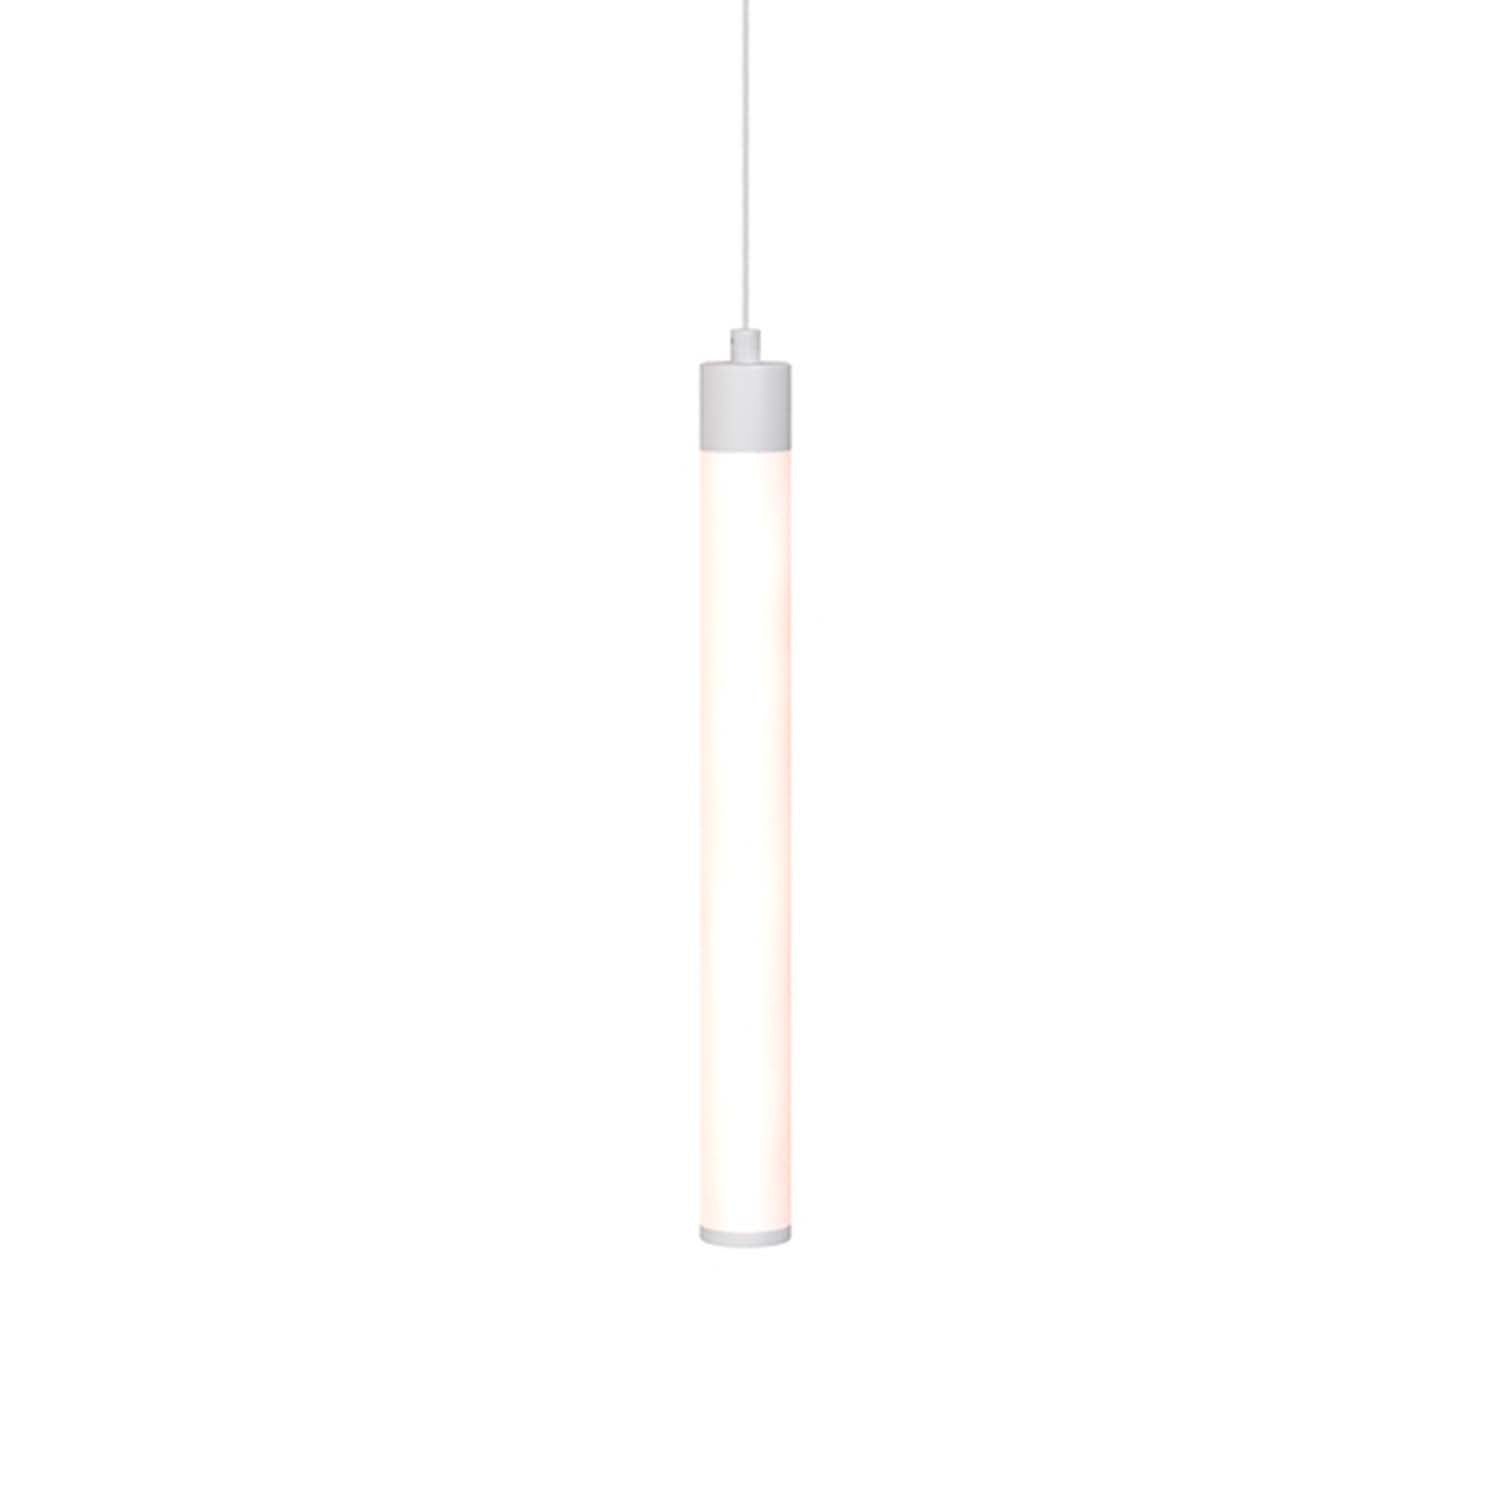 RAY - Modern black or white design LED tube pendant lamp